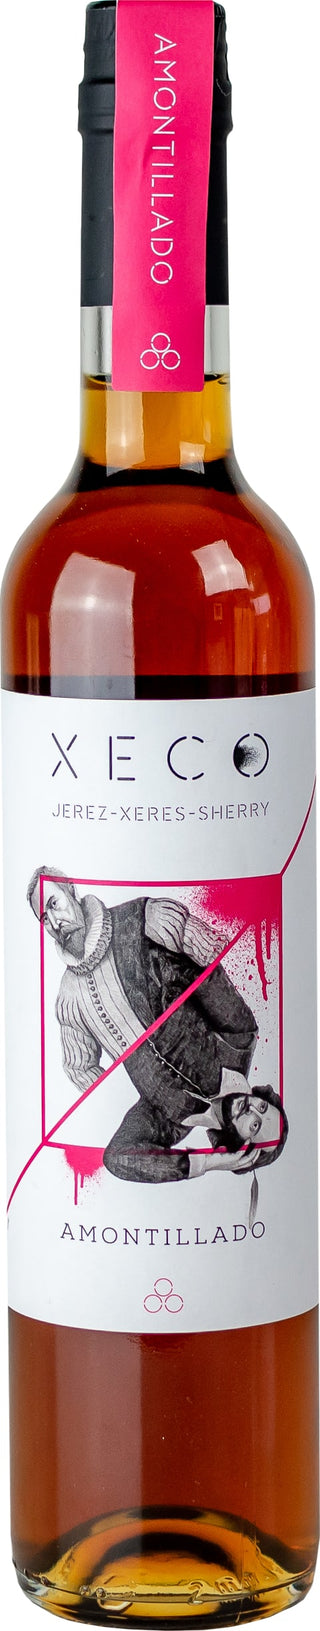 Xeco Amontillado, NV6x75cl - Just Wines 